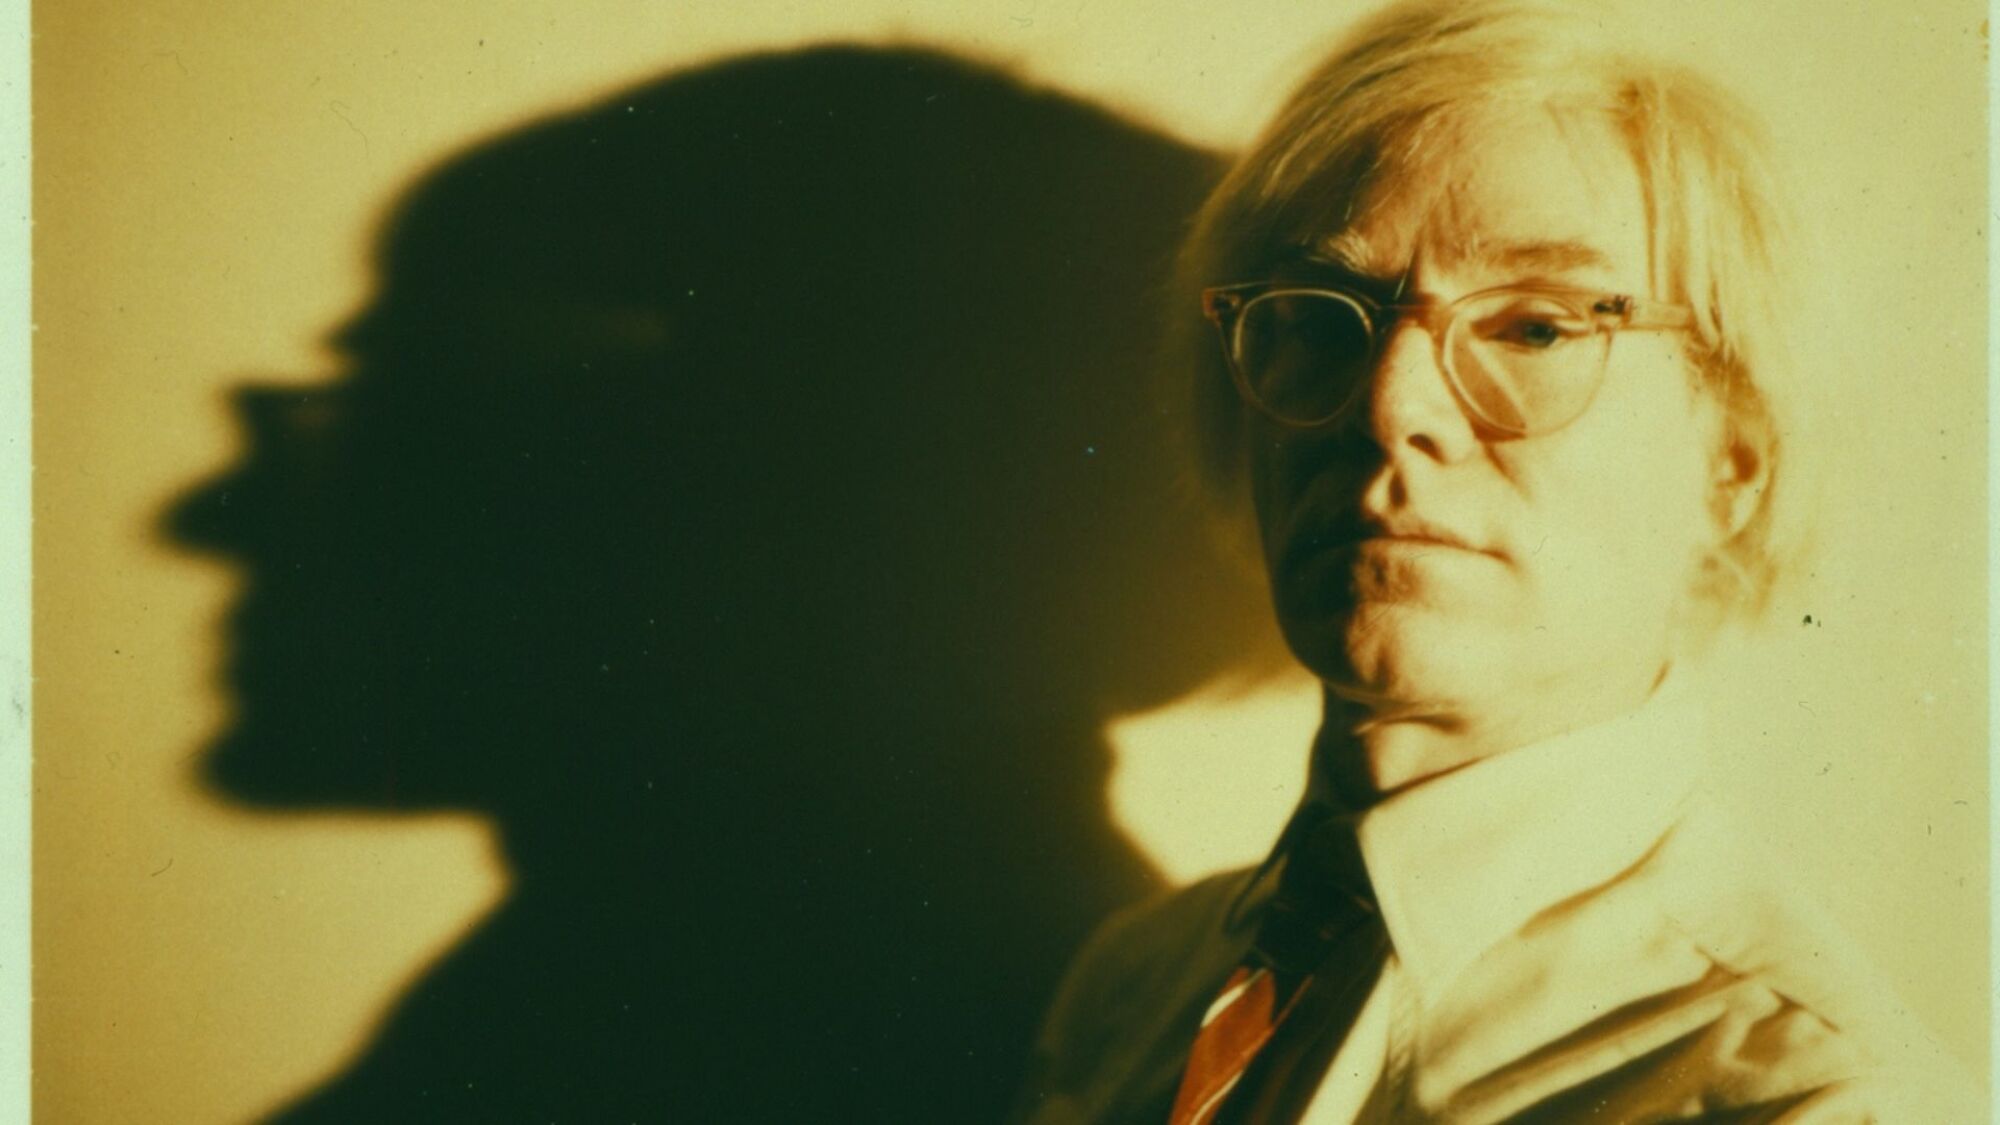 Portrait d'Andy Warhol, avec une grande ombre projetée sur le mur derrière lui.